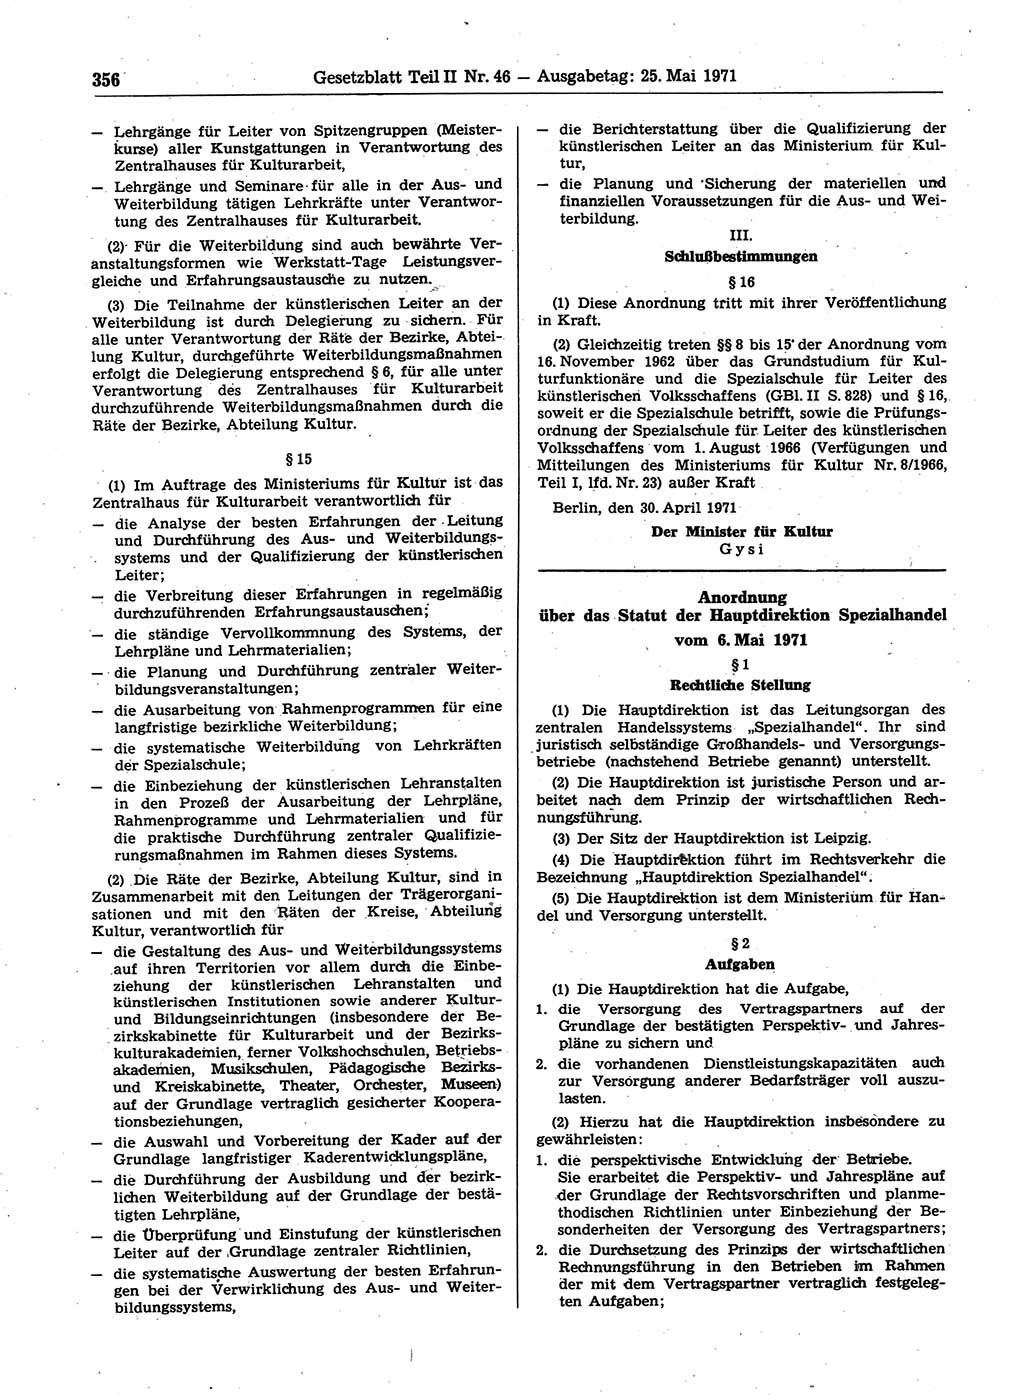 Gesetzblatt (GBl.) der Deutschen Demokratischen Republik (DDR) Teil ⅠⅠ 1971, Seite 356 (GBl. DDR ⅠⅠ 1971, S. 356)